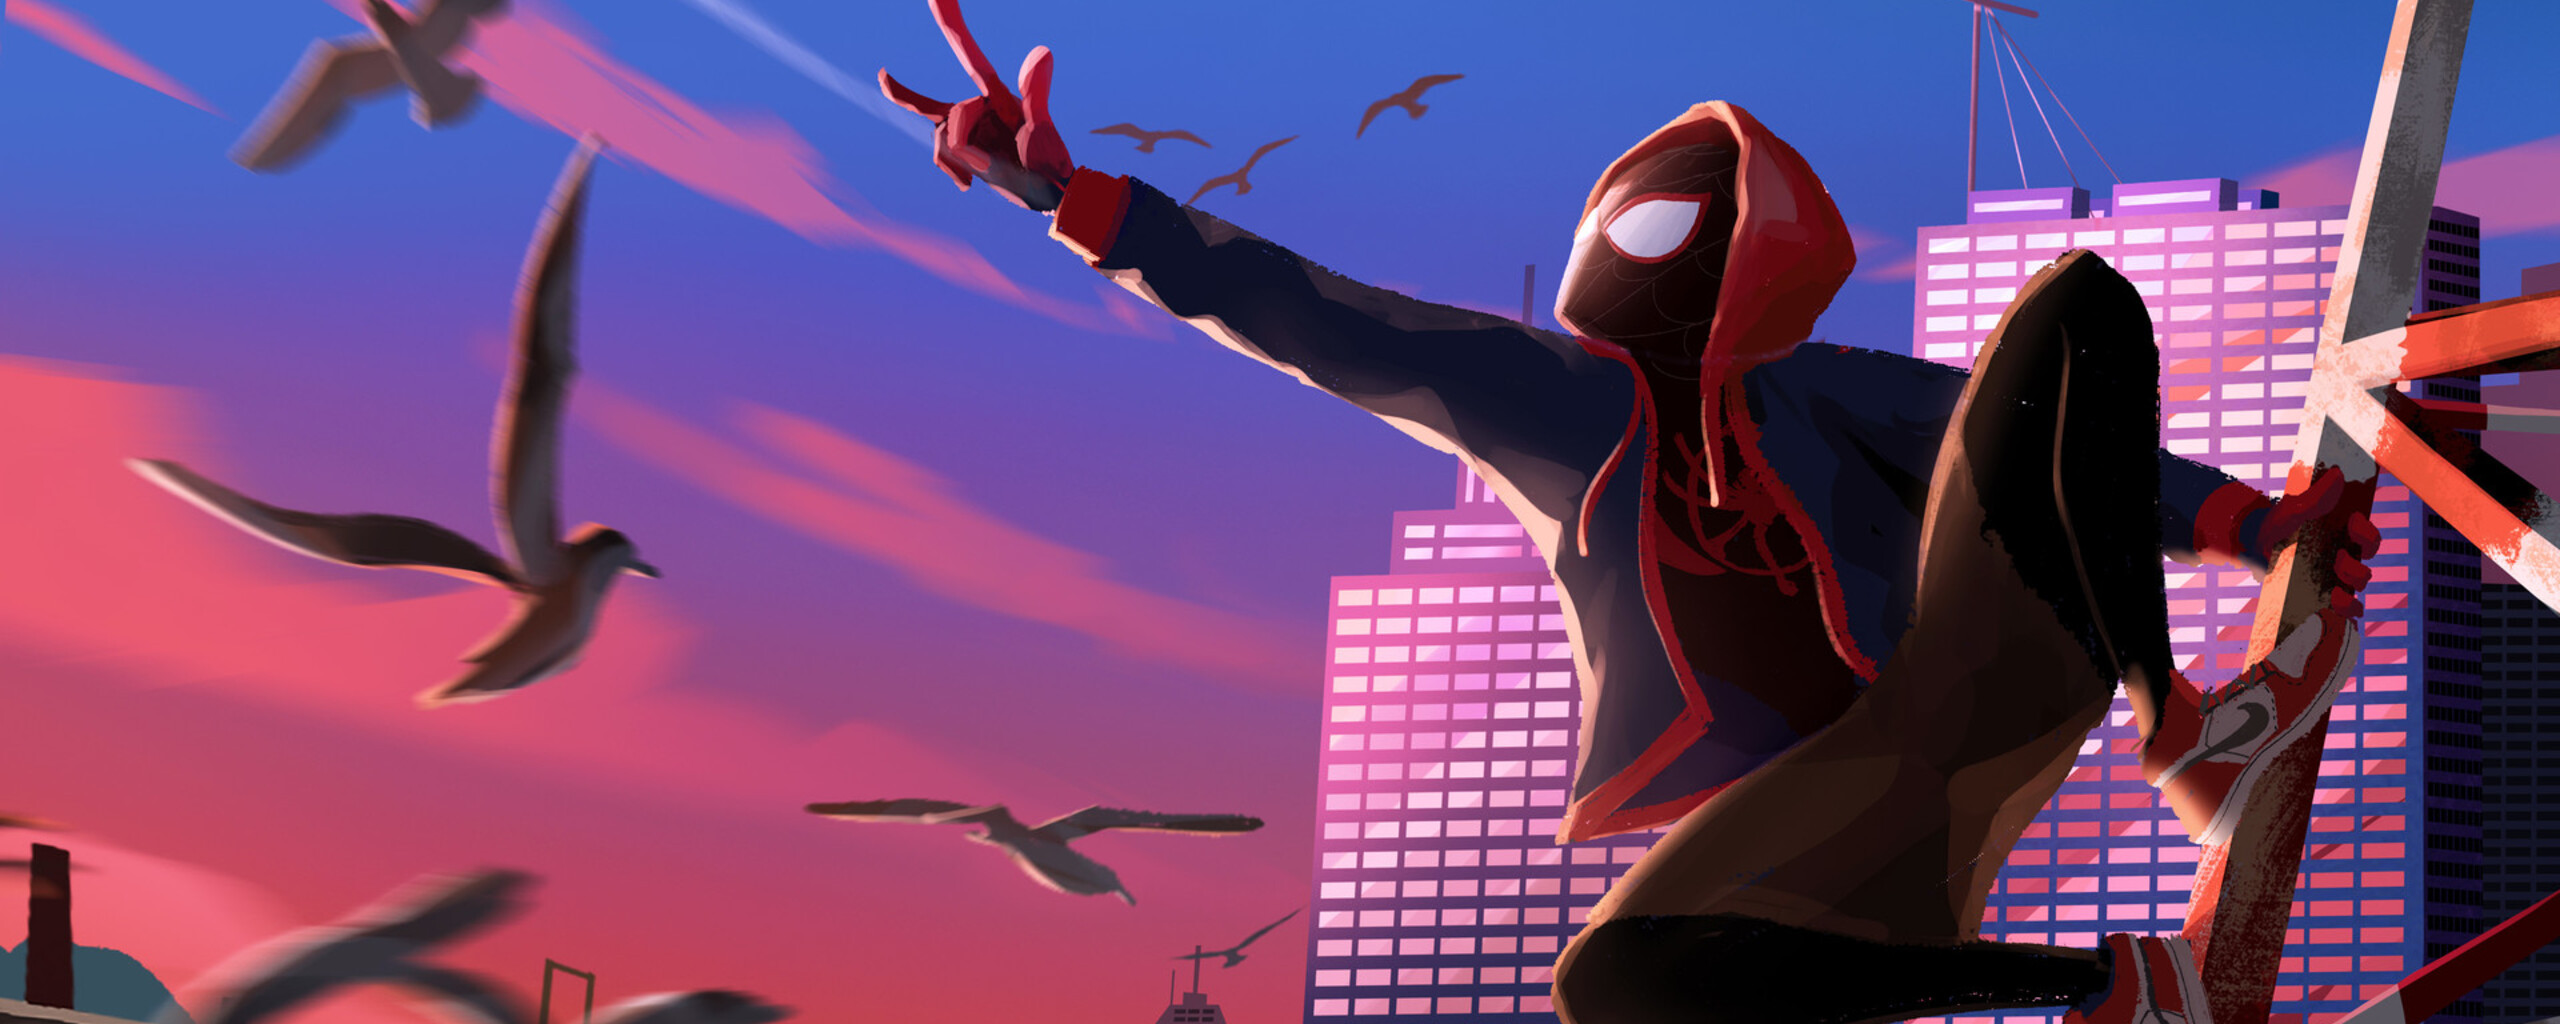 Spider Man Into The Spider Verse Art In 2560x1024 Resolution. spider-man-in...